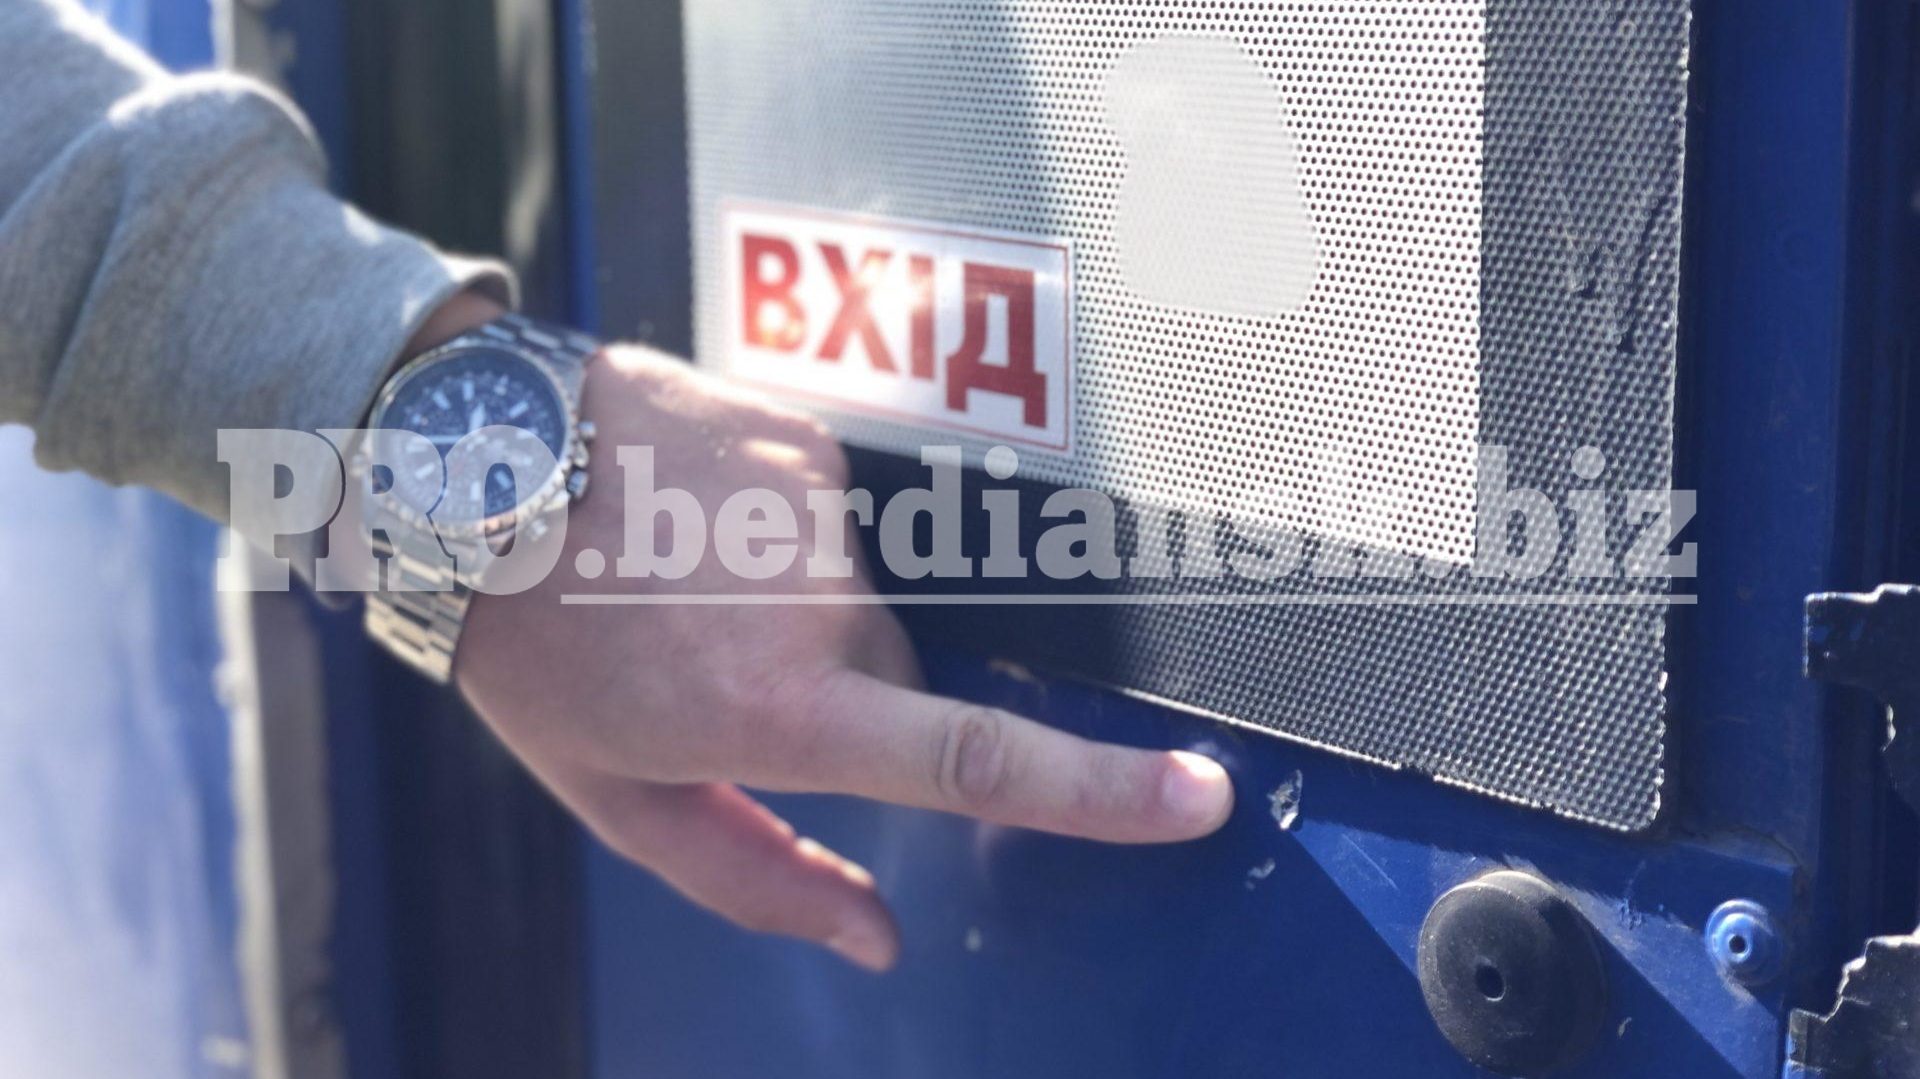 Полиция ведет расследование по факту обстрела маршруток в Бердянске, — ФОТО